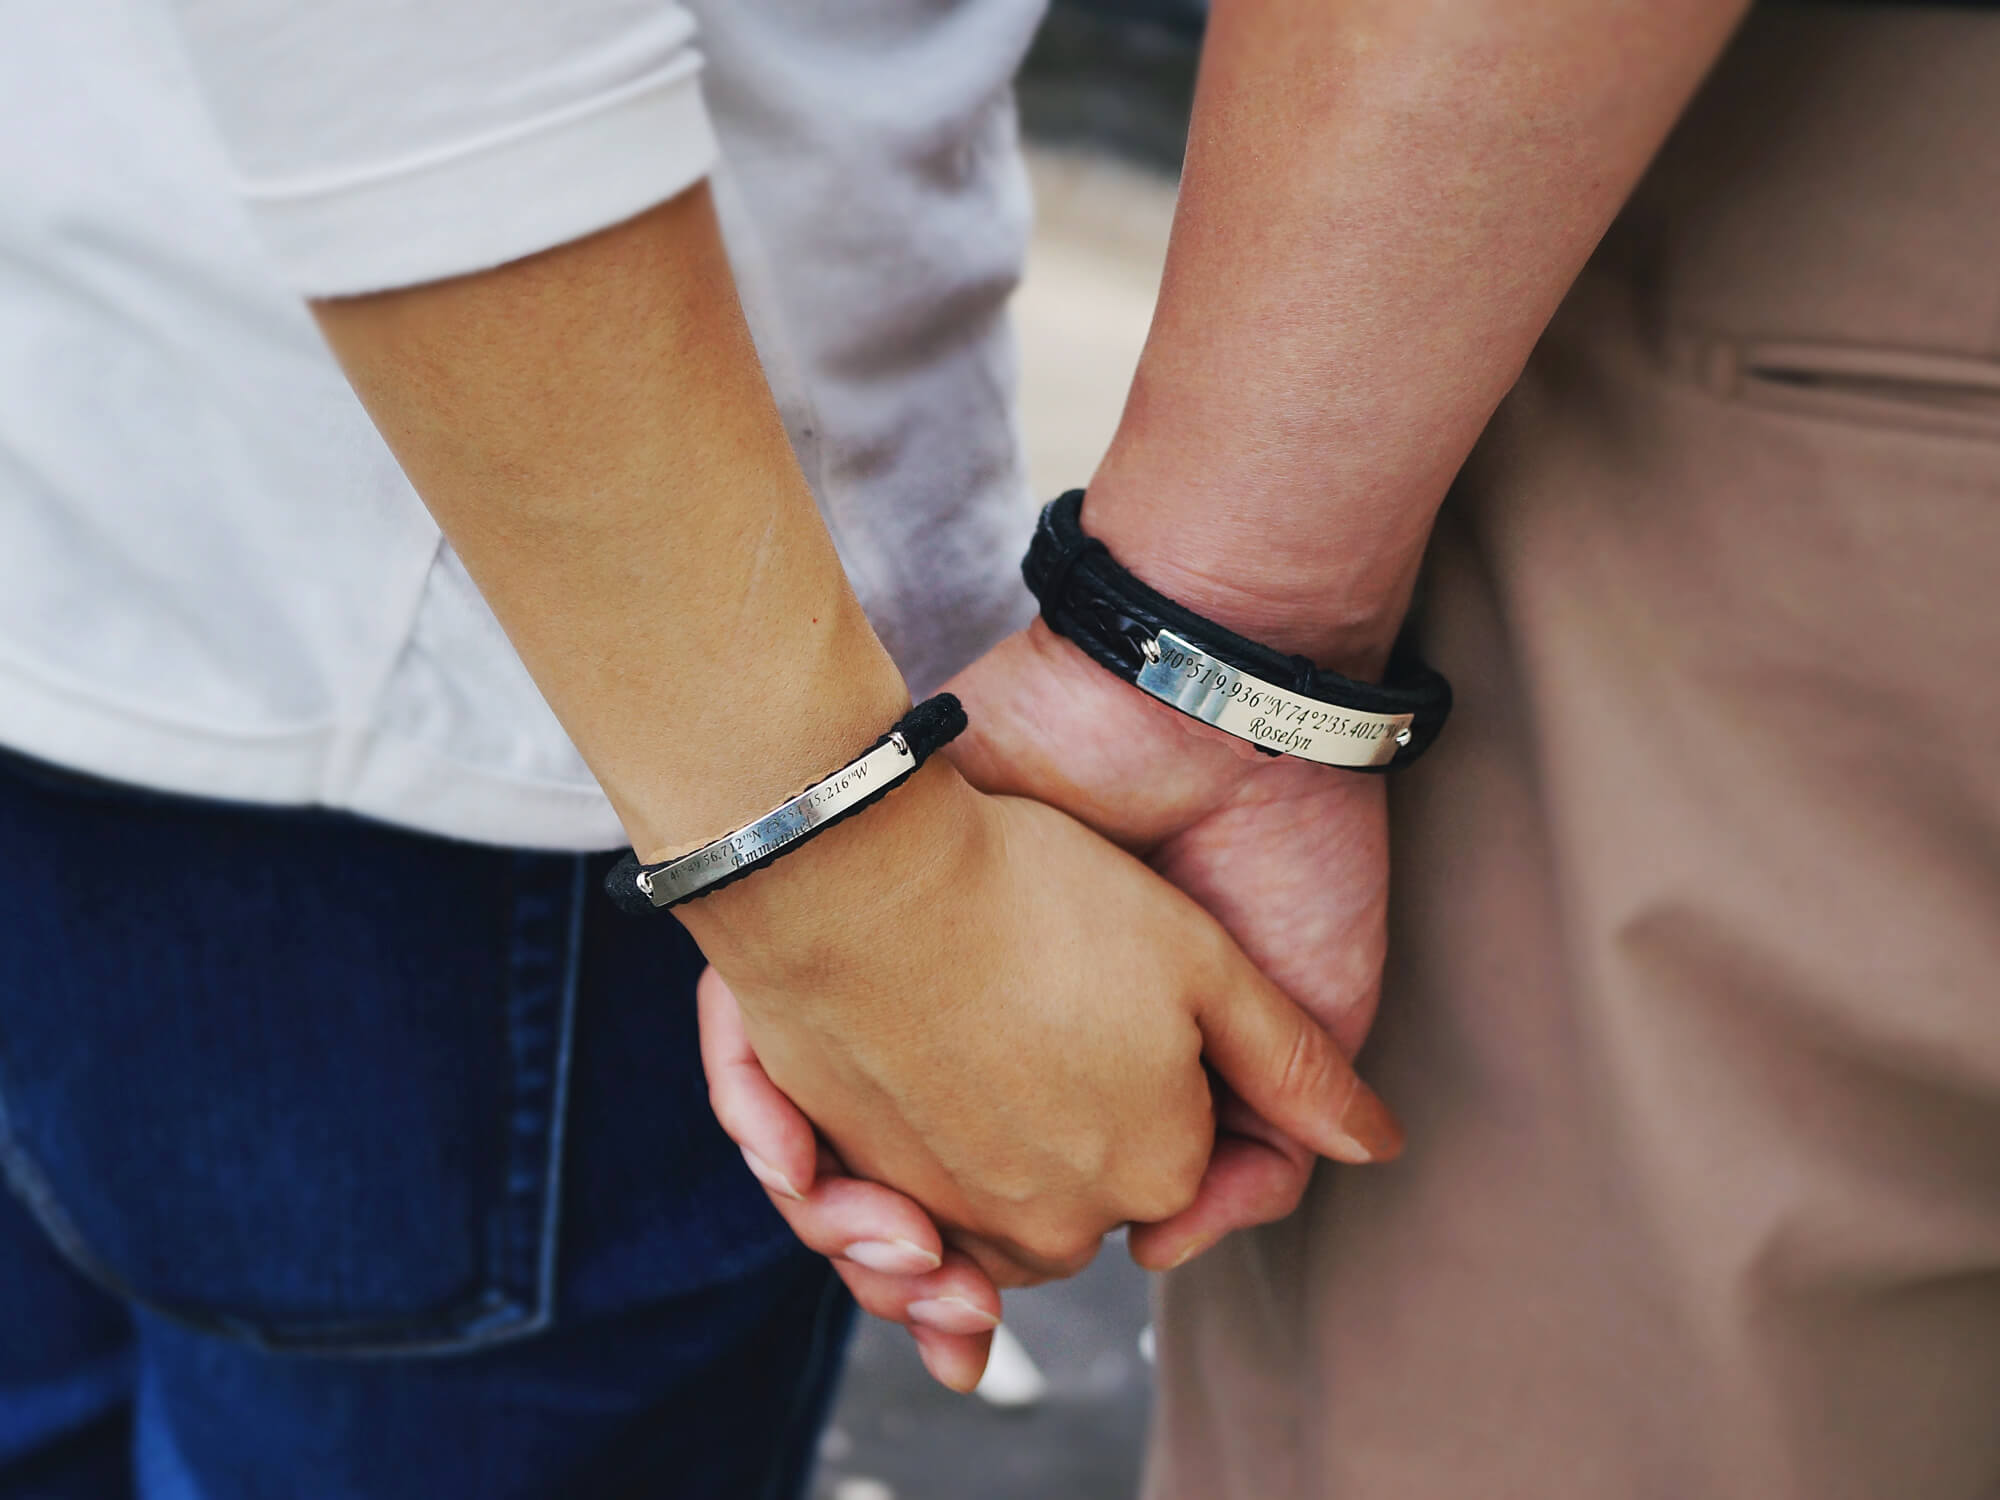 Couple Bracelet his hers bracelet key lock Boyfriend girlfriend jewelry   eBay